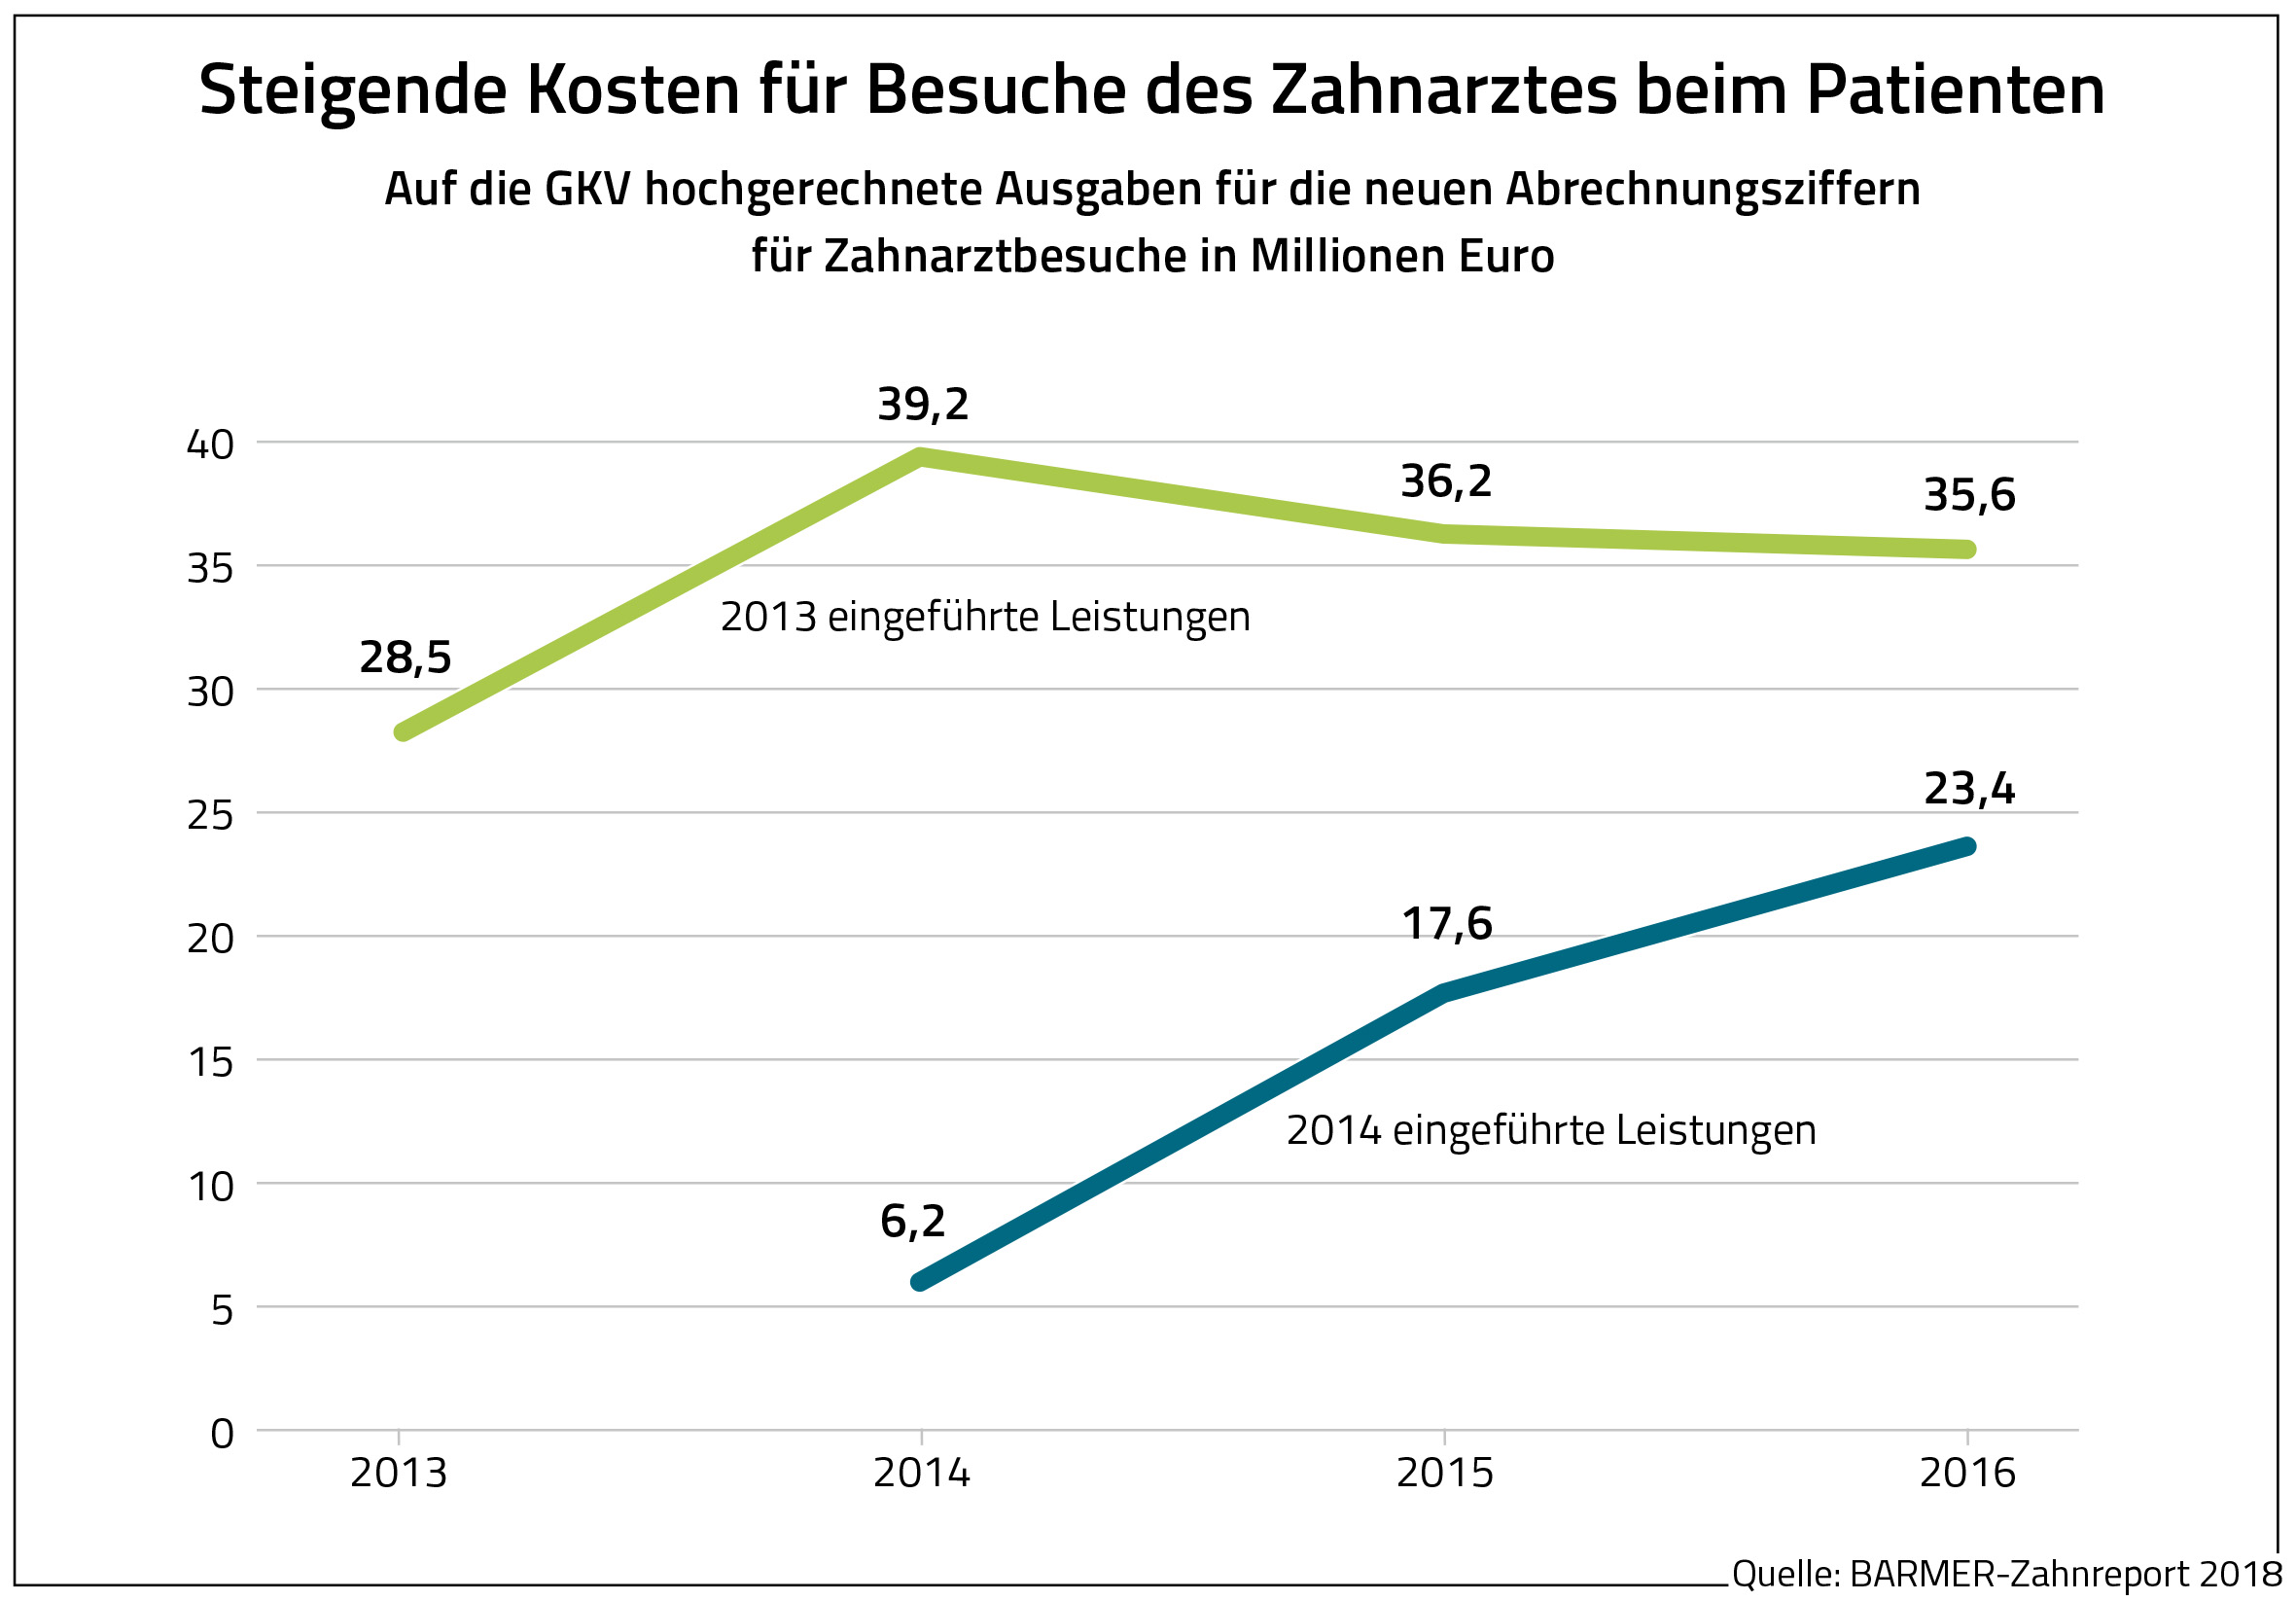 Die Grafik zeigt die hochgerechneten Ausgaben für die neuen Abrechnungsziffern für Zahnarztbesuche in Millionen Euro